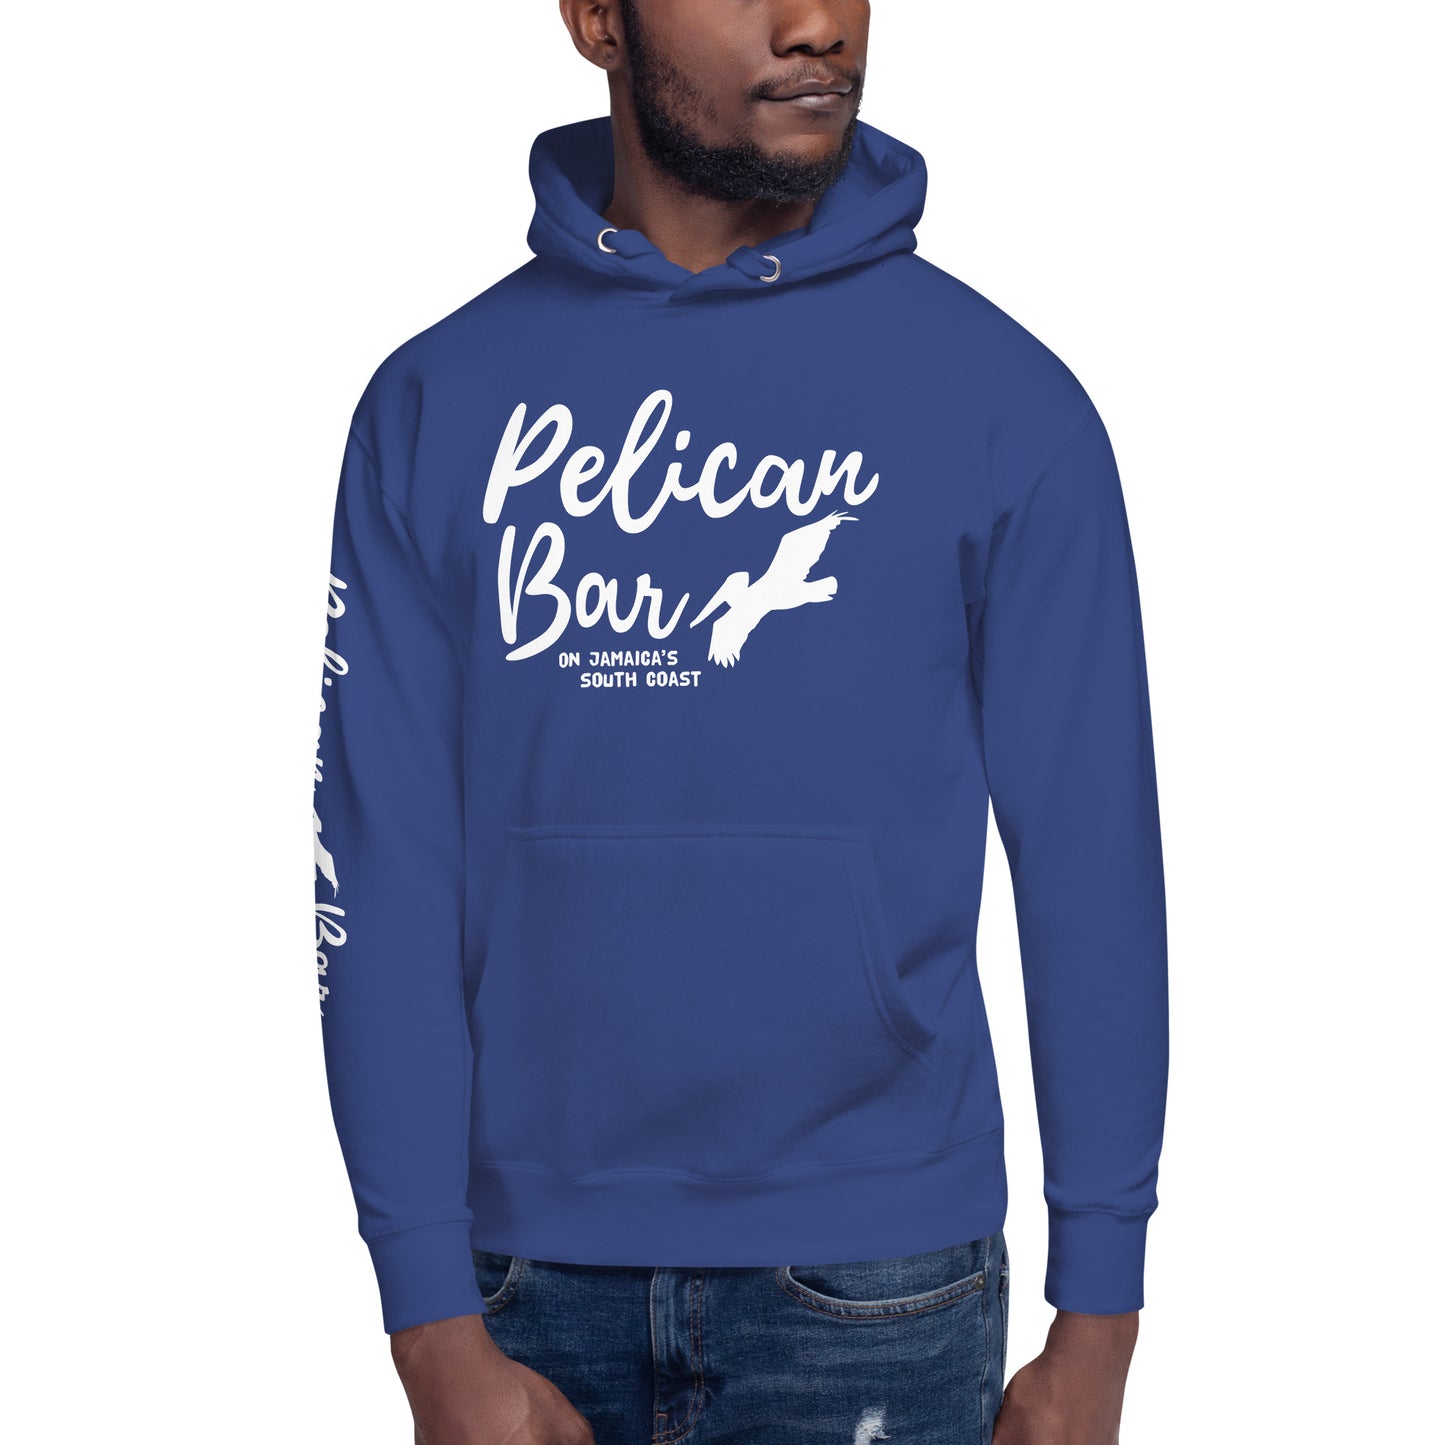 Pelican Bar White Logo + Sleeve Unisex Hoodie in Multiple Colors